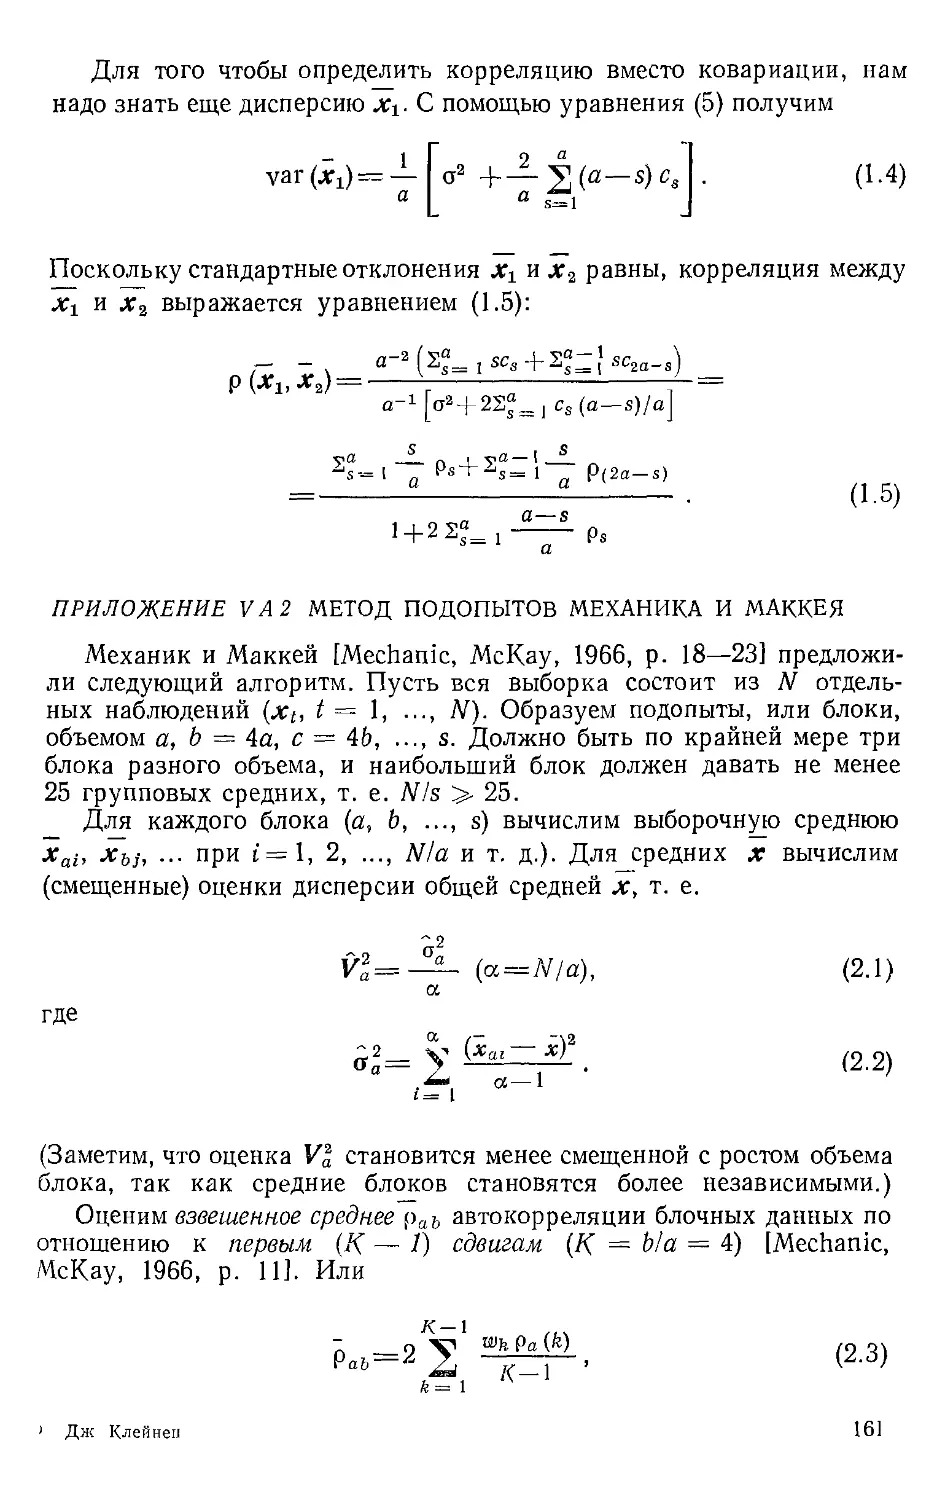 Приложение V.A.2. Метод подопытов Механика и Маккея